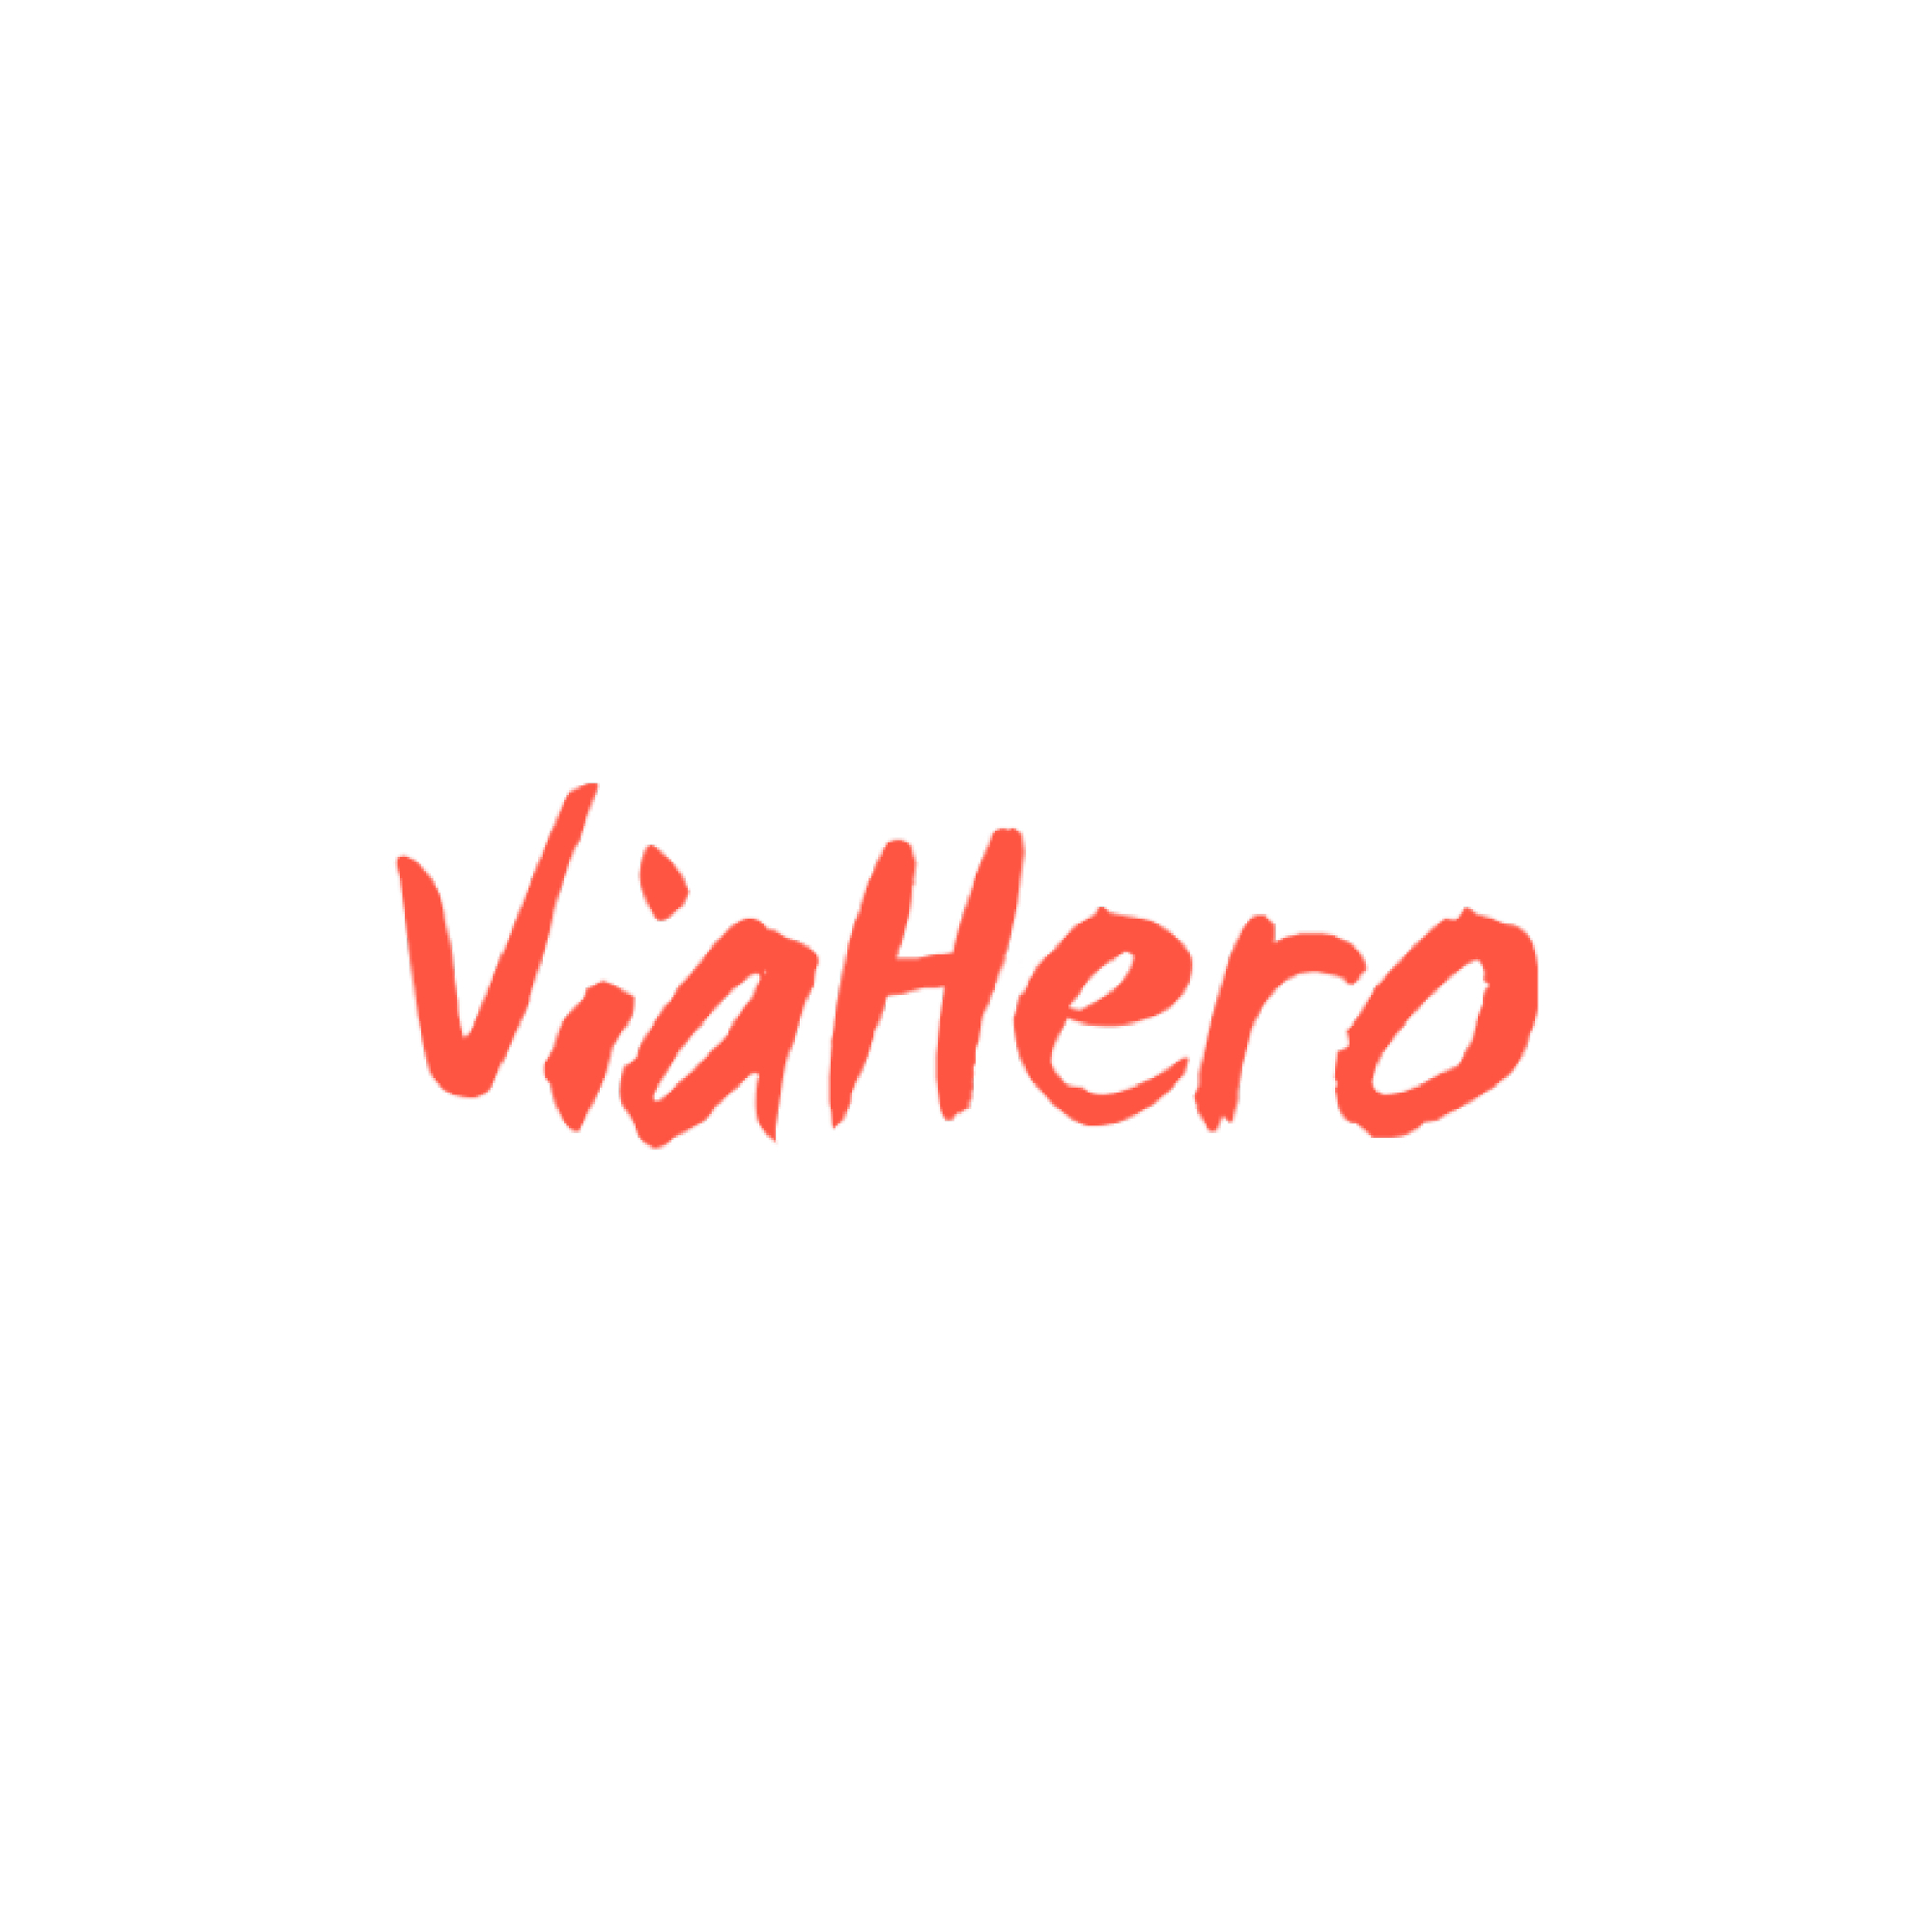 ViaHero